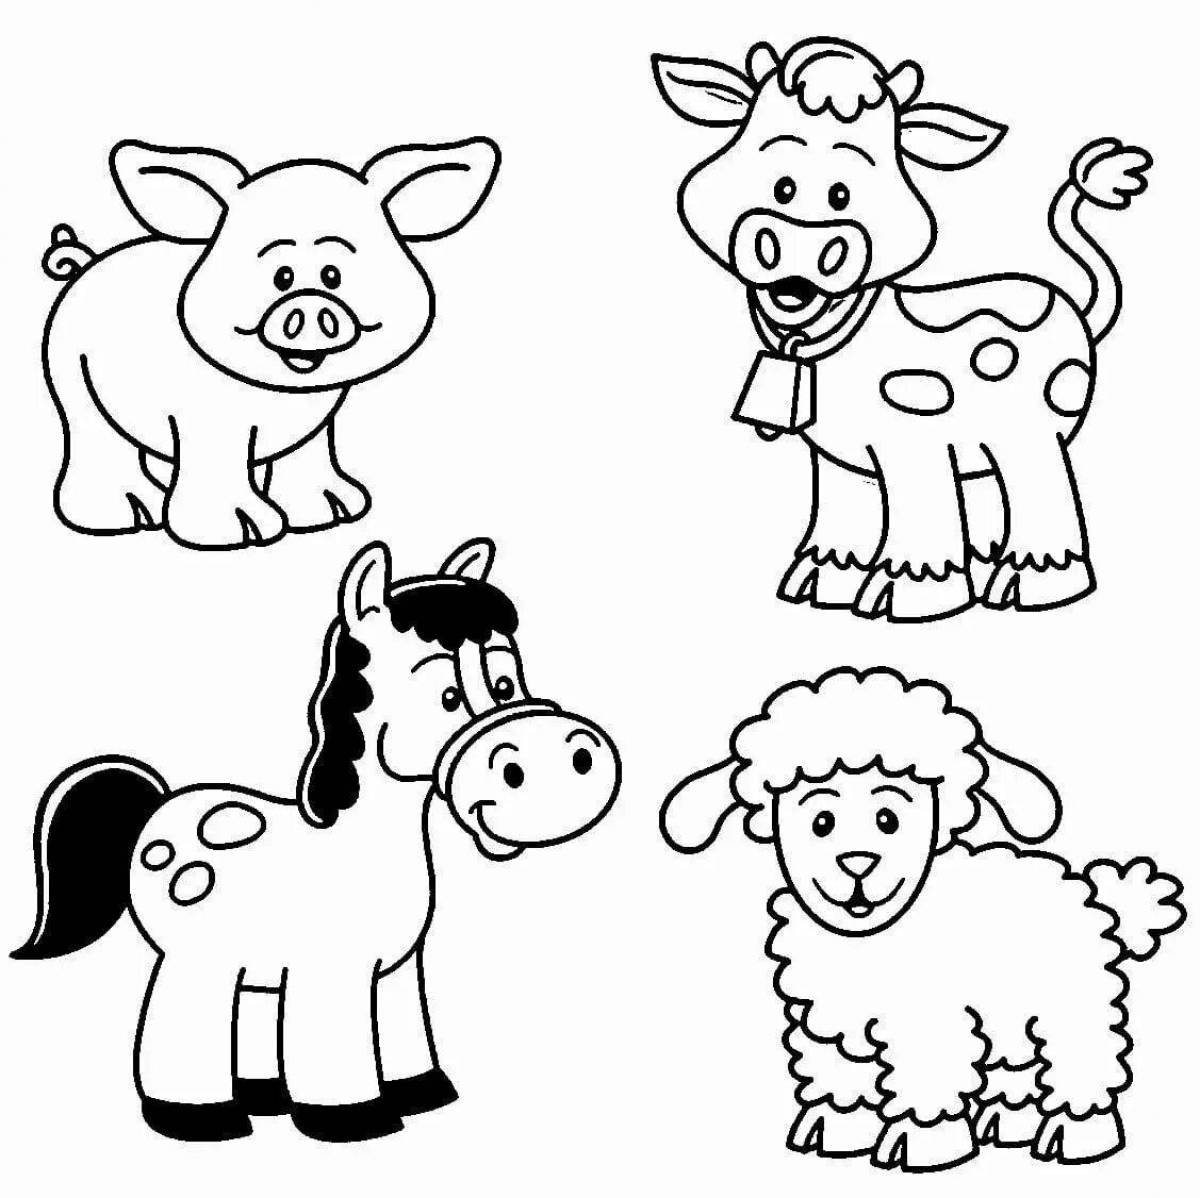 Веселая раскраска для детей 3-4 лет: простые животные